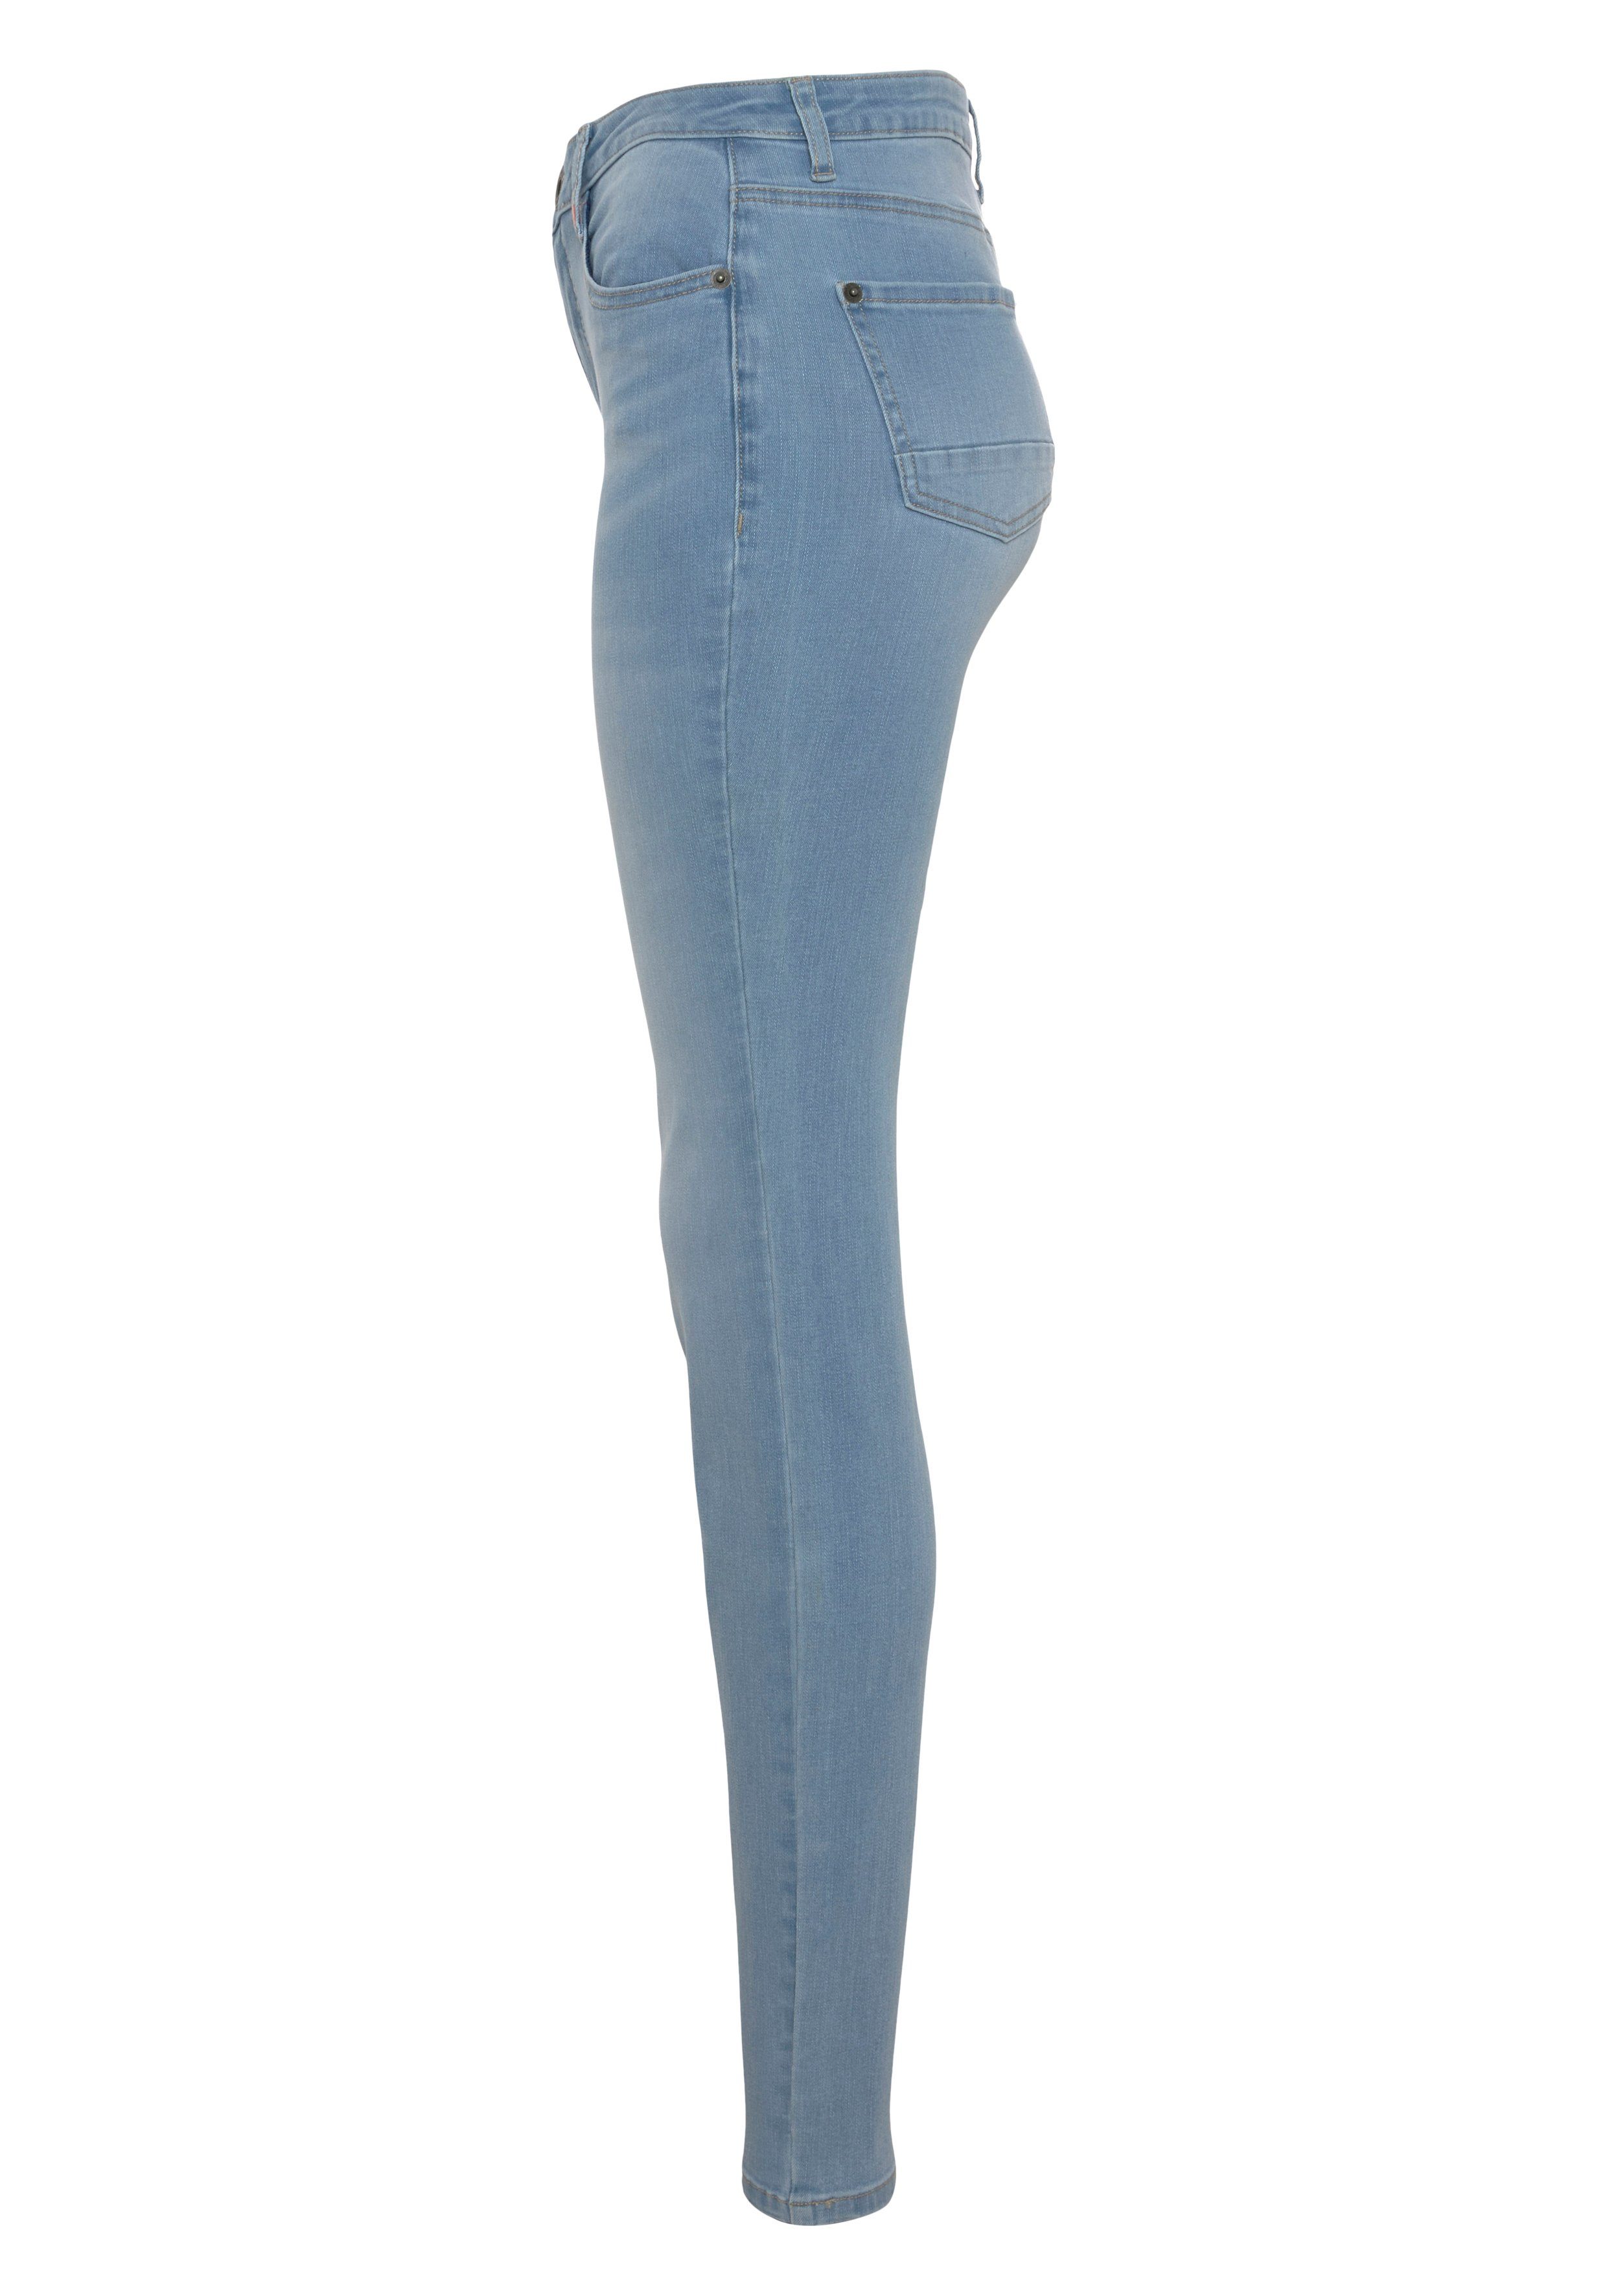 NolaAK light blue NEUE used Slim-Fit Alife Kickin KOLLEKTION High-waist-Jeans &